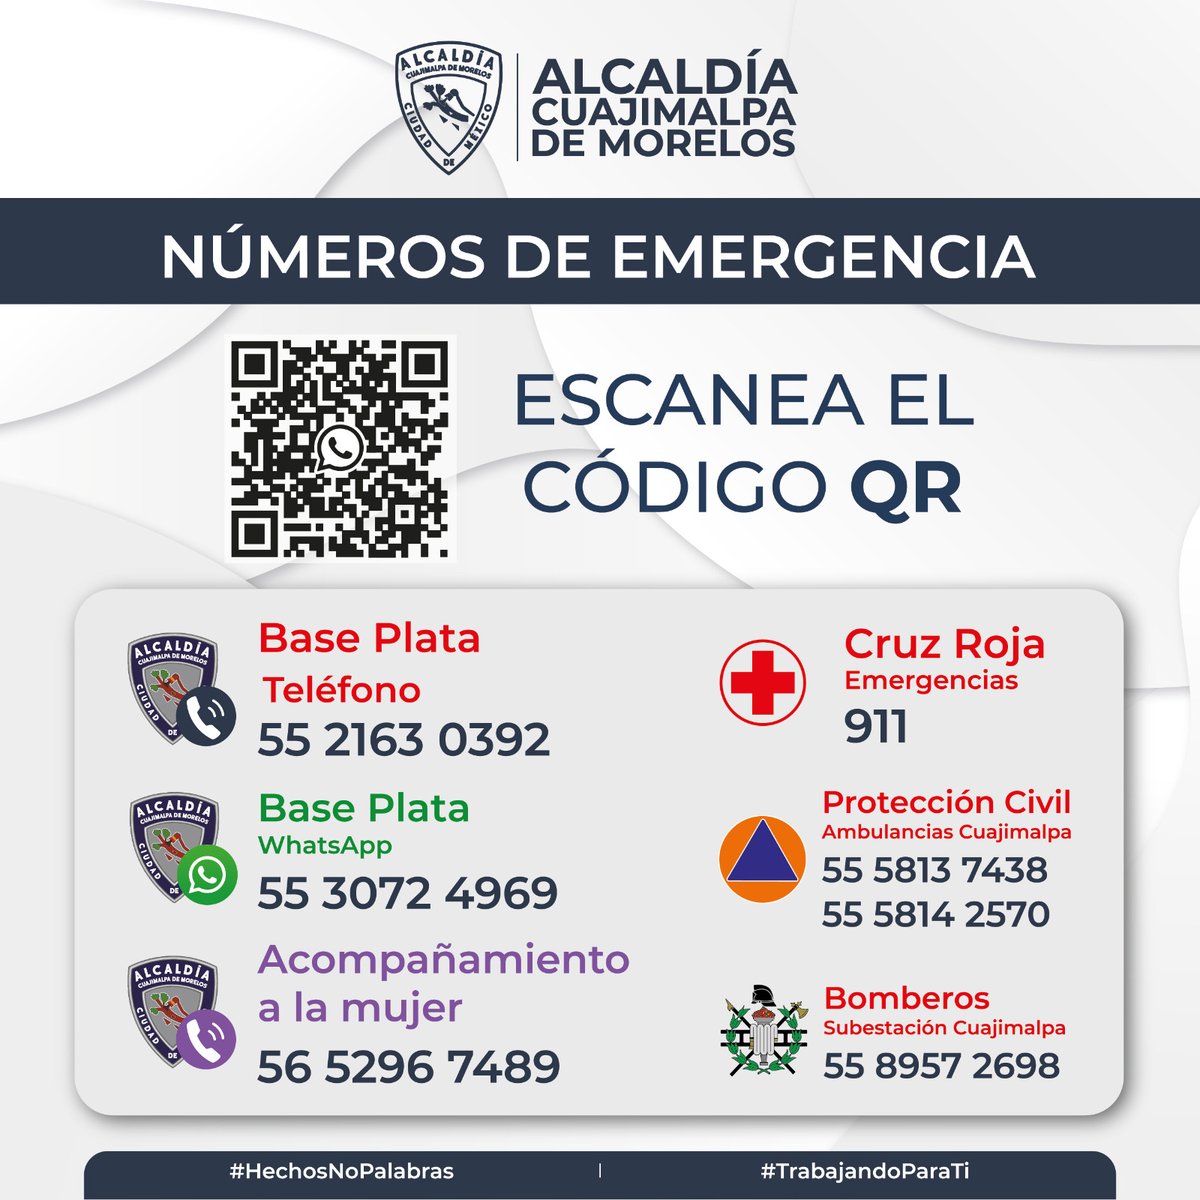 Alcaldía #Cuajimalpa Te compartimos los teléfonos de Emergencia en Alcaldía #Cuajimalpa, en los cuales puedes solicitar todo tipo de apoyo y atención urgente. También puedes marcar al 911 y @locatel_mx *0311 @CuajimalpaSeg #SiempreContigo @AdrianRubalcava